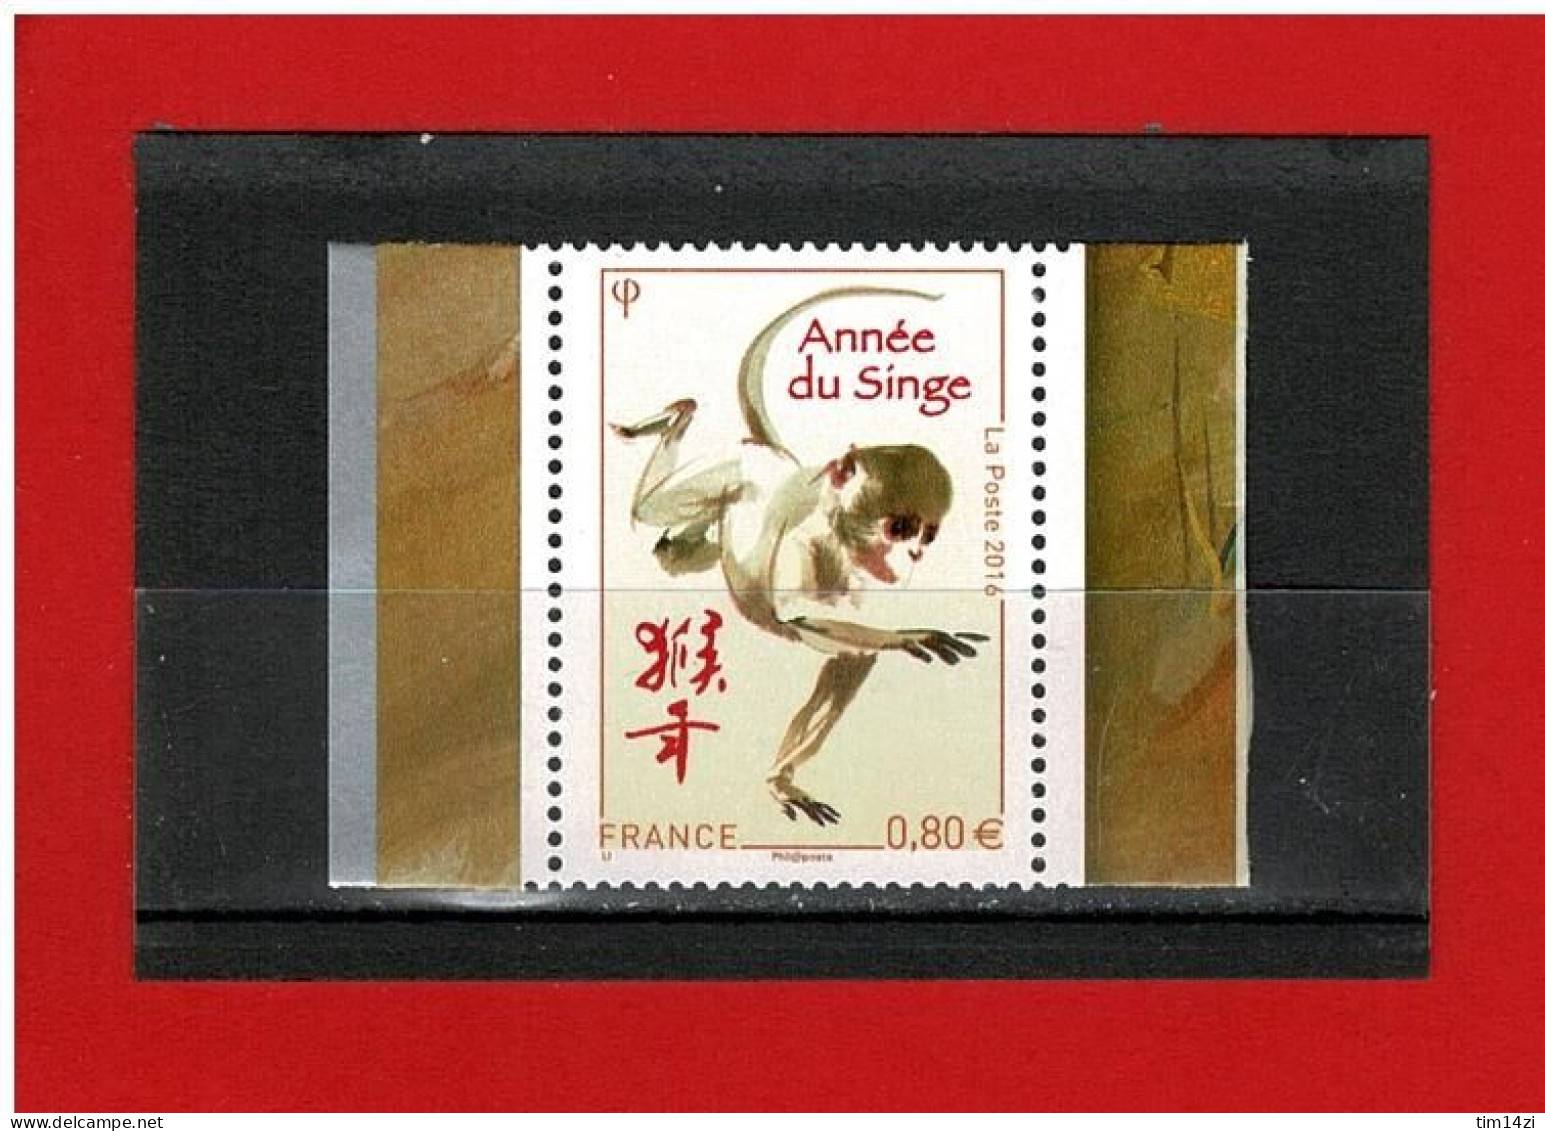 2016 - ANNEE LUNAIRE CHINOISE DU SINGE - N°5031 - NEUF** - COTE Y & T : 2.50 Euros - Ungebraucht